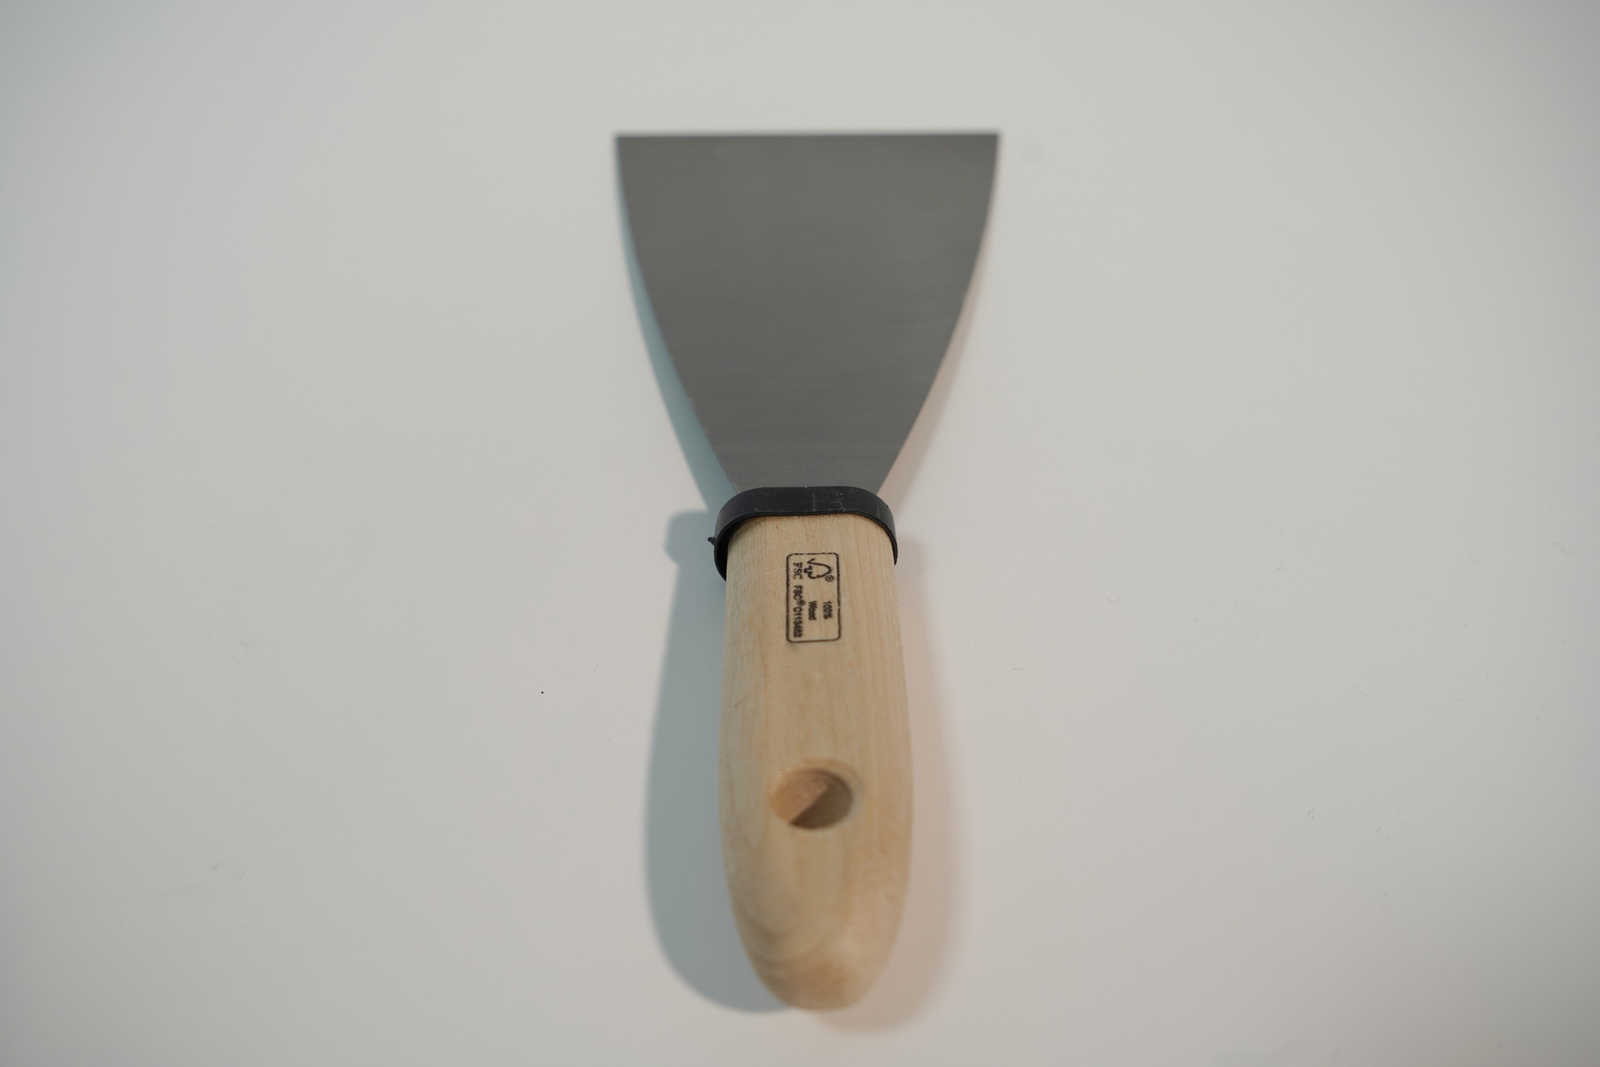             Spatola da pittore 80 mm con lama flessibile in acciaio e manico in legno
        